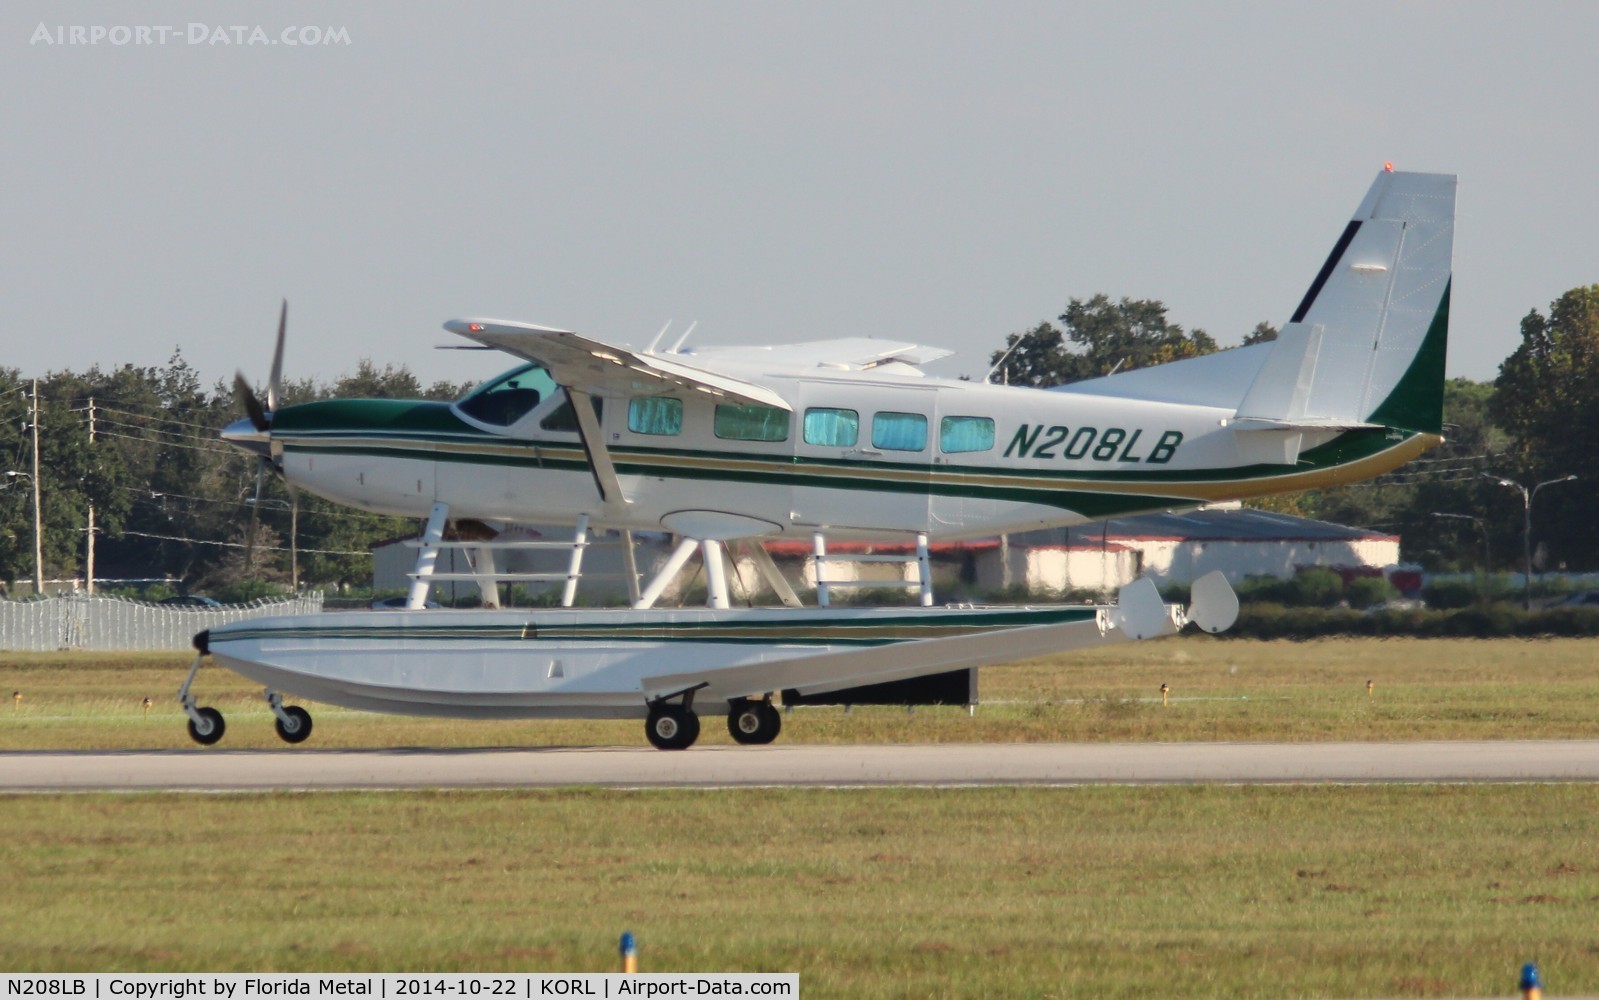 N208LB, 2004 Cessna 208 C/N 20800378, C208 zx